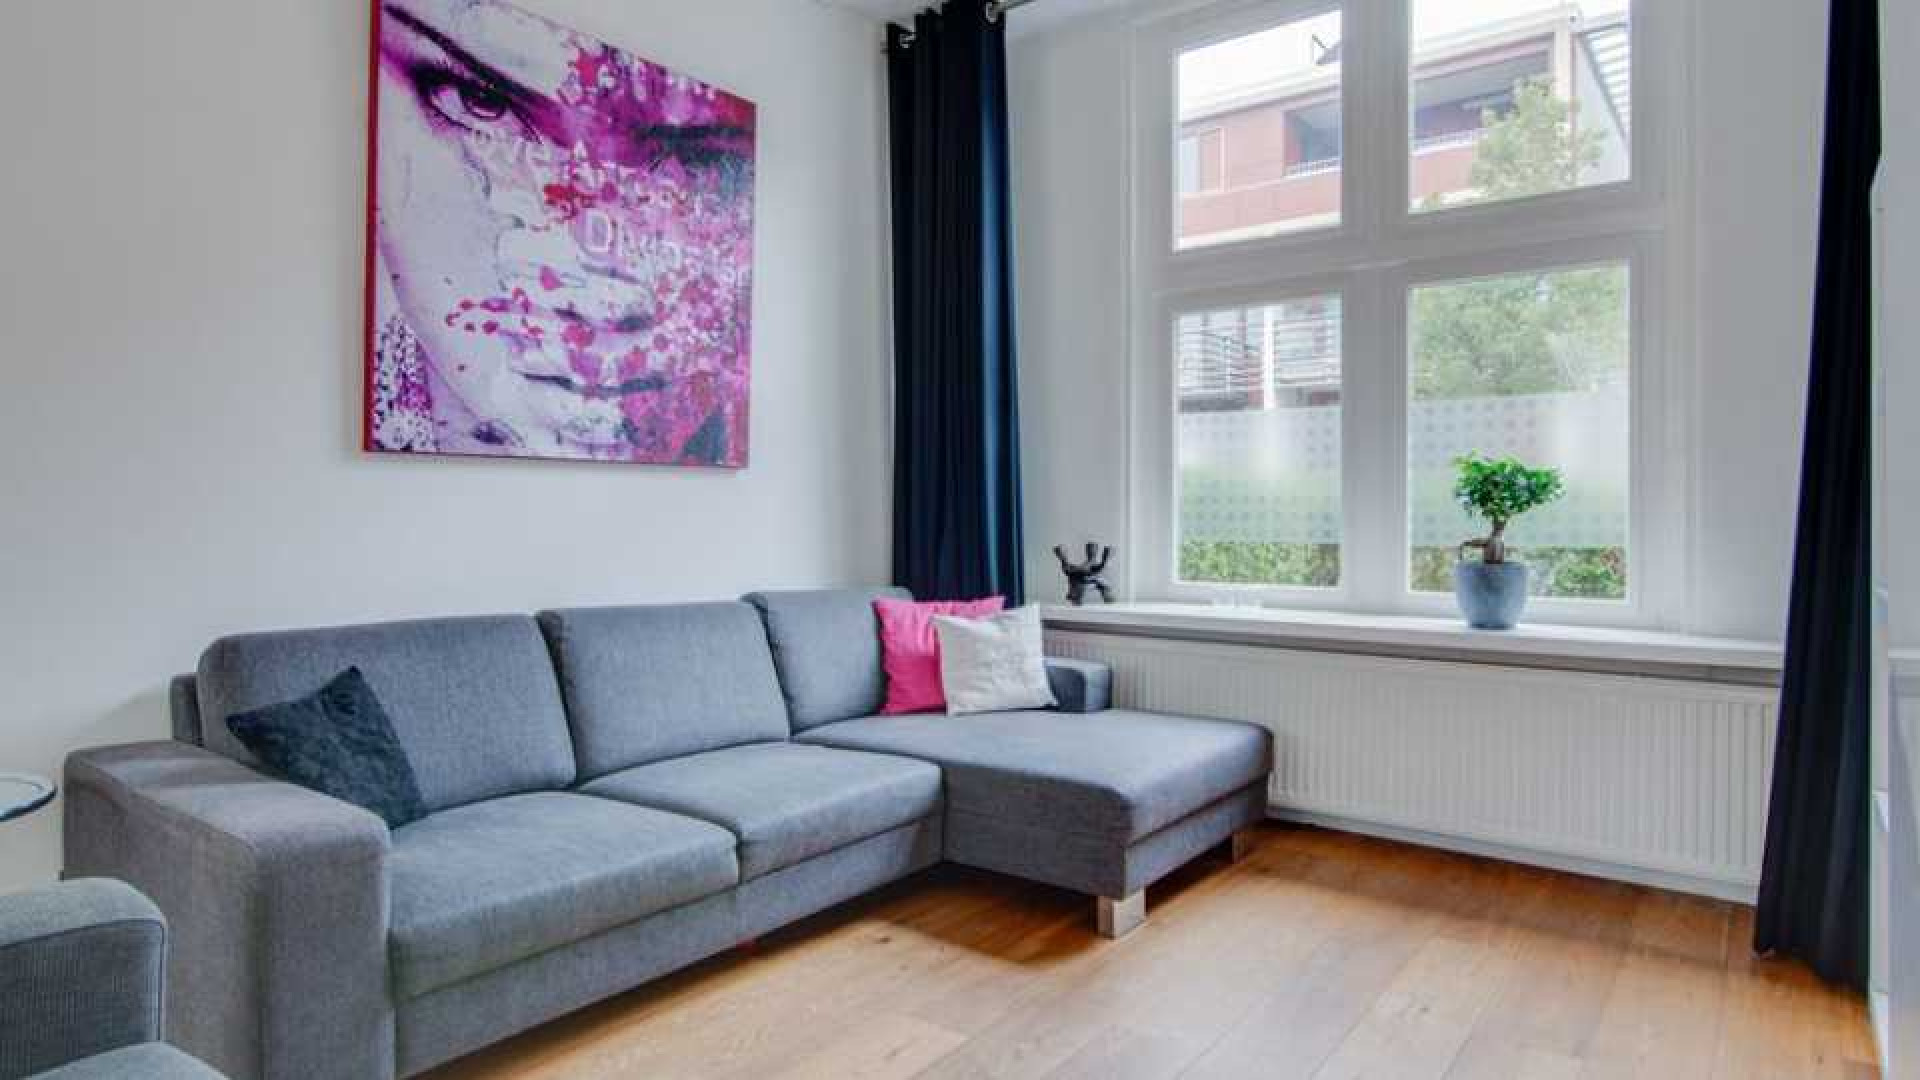 Domien Verschuuren van Serious Request koopt eengezinswoning in Utrecht. Zie foto's